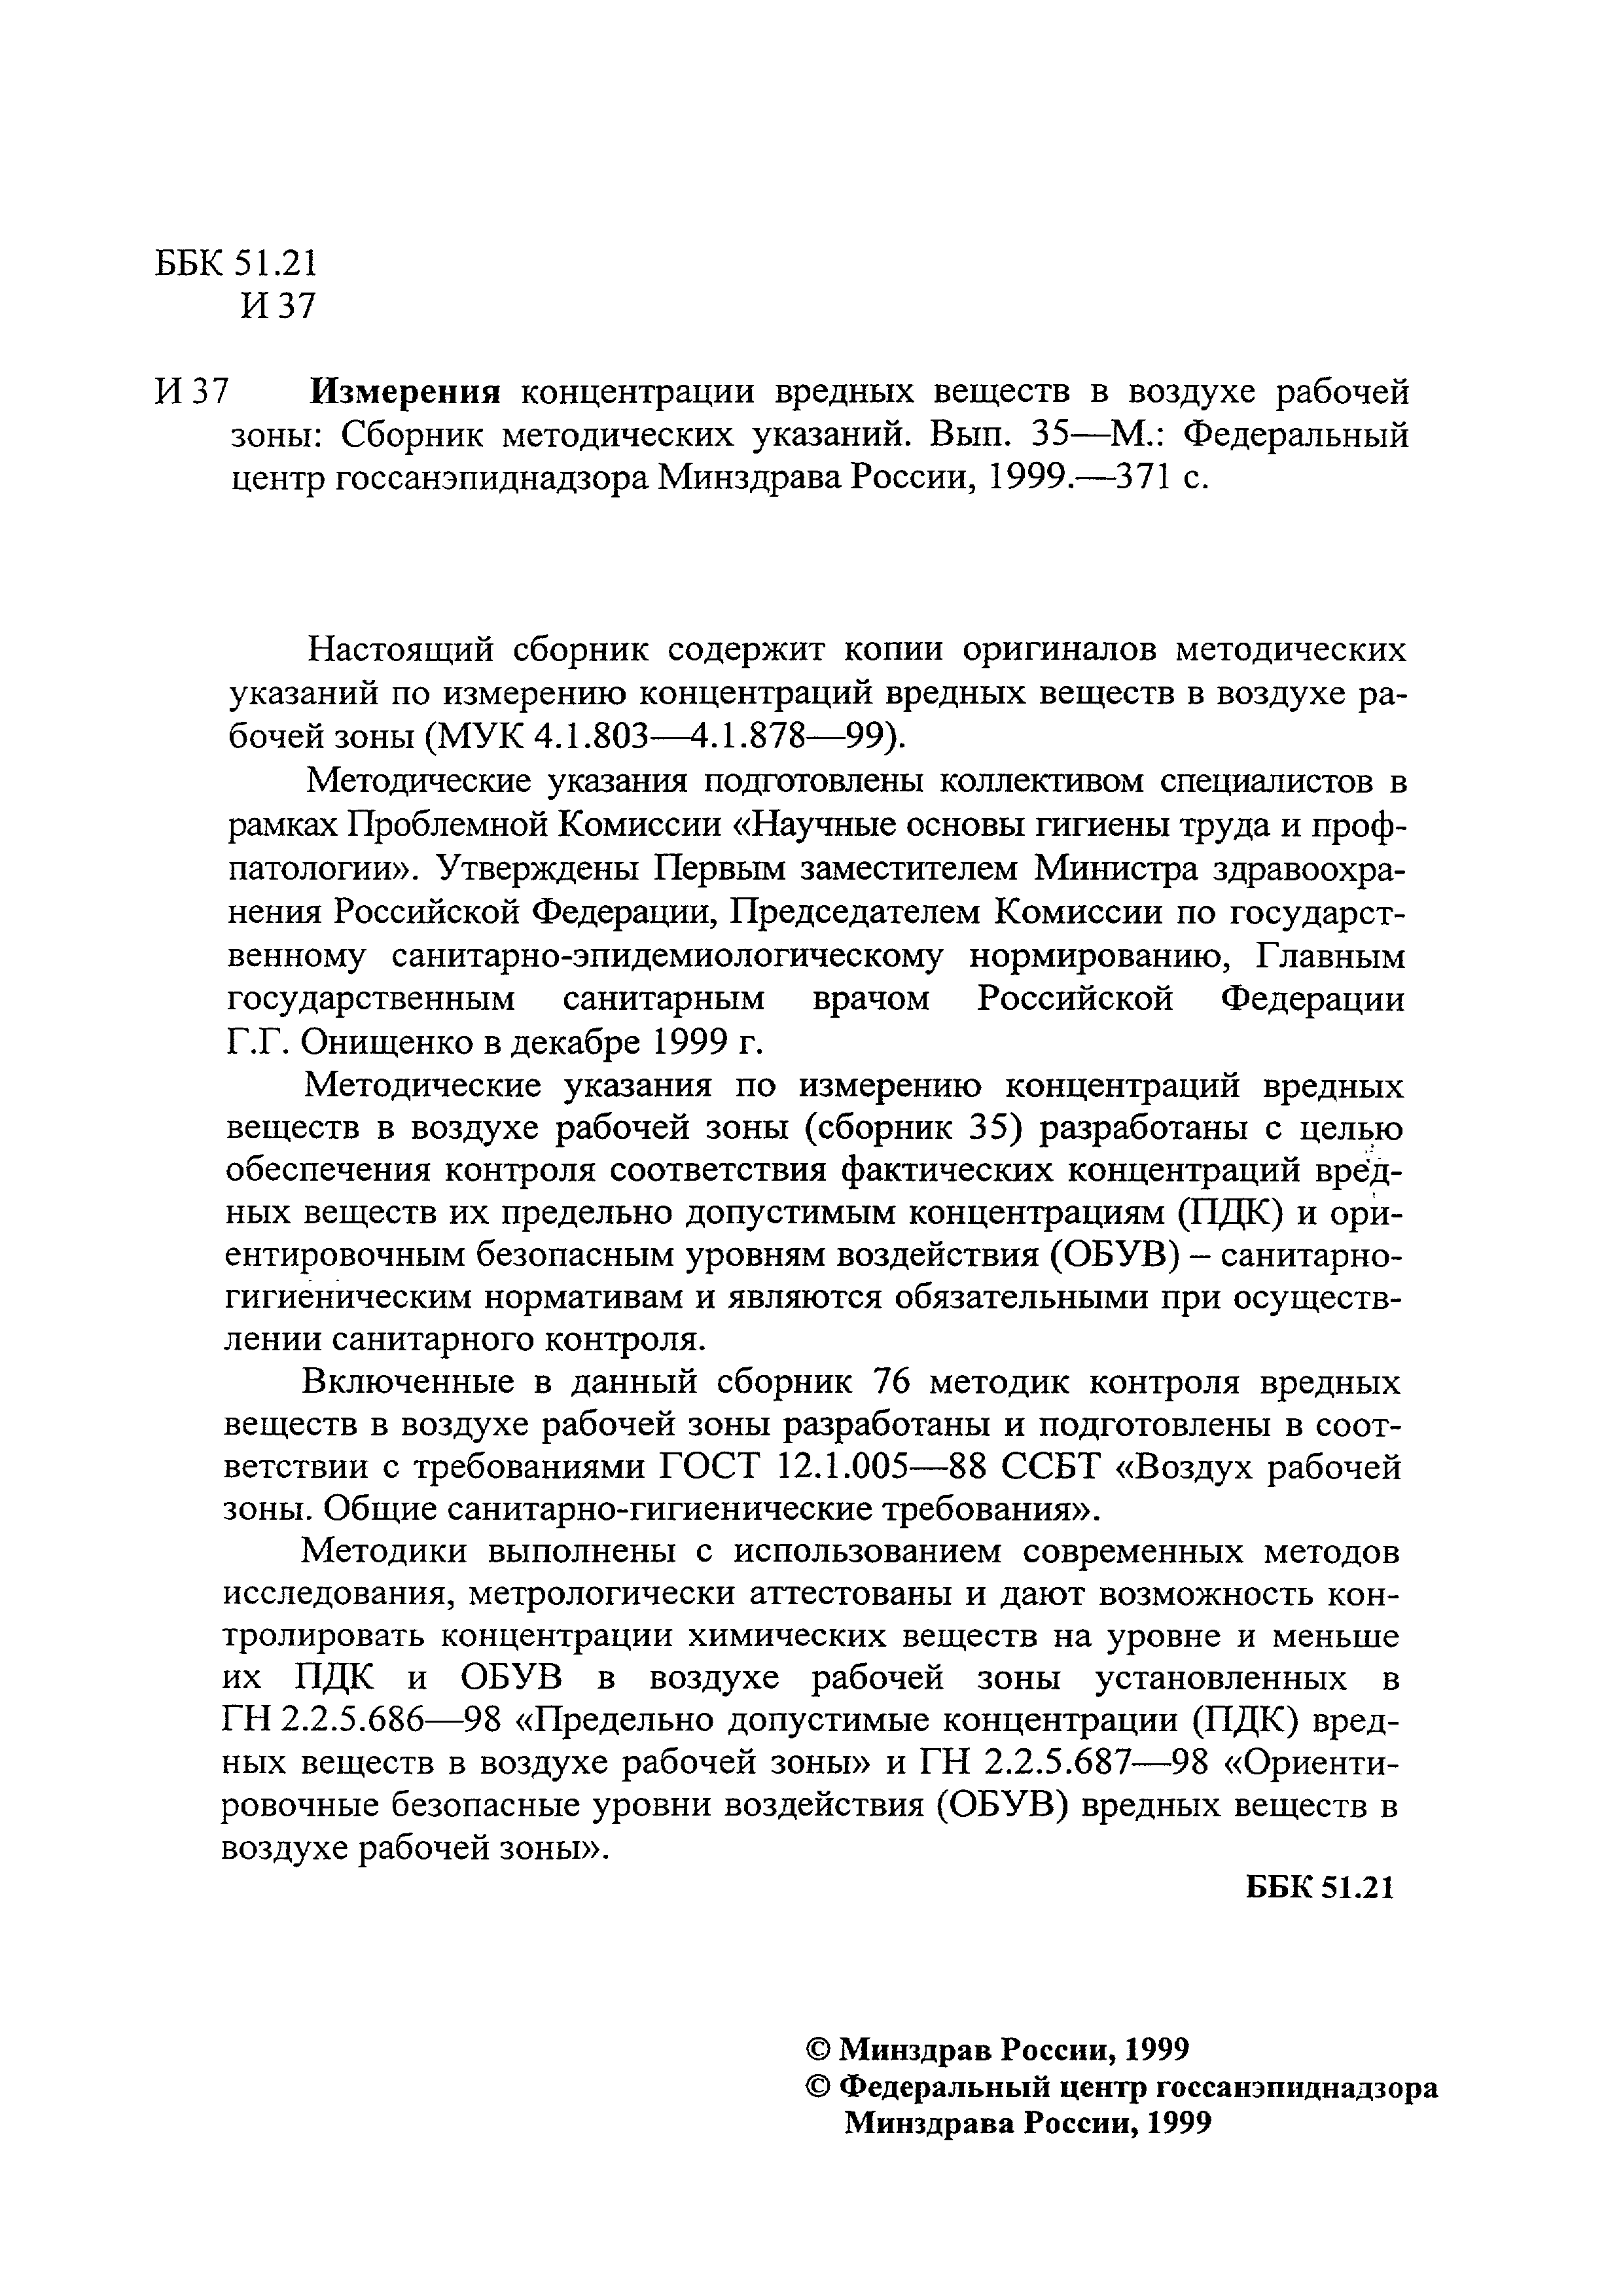 МУК 4.1.820-99